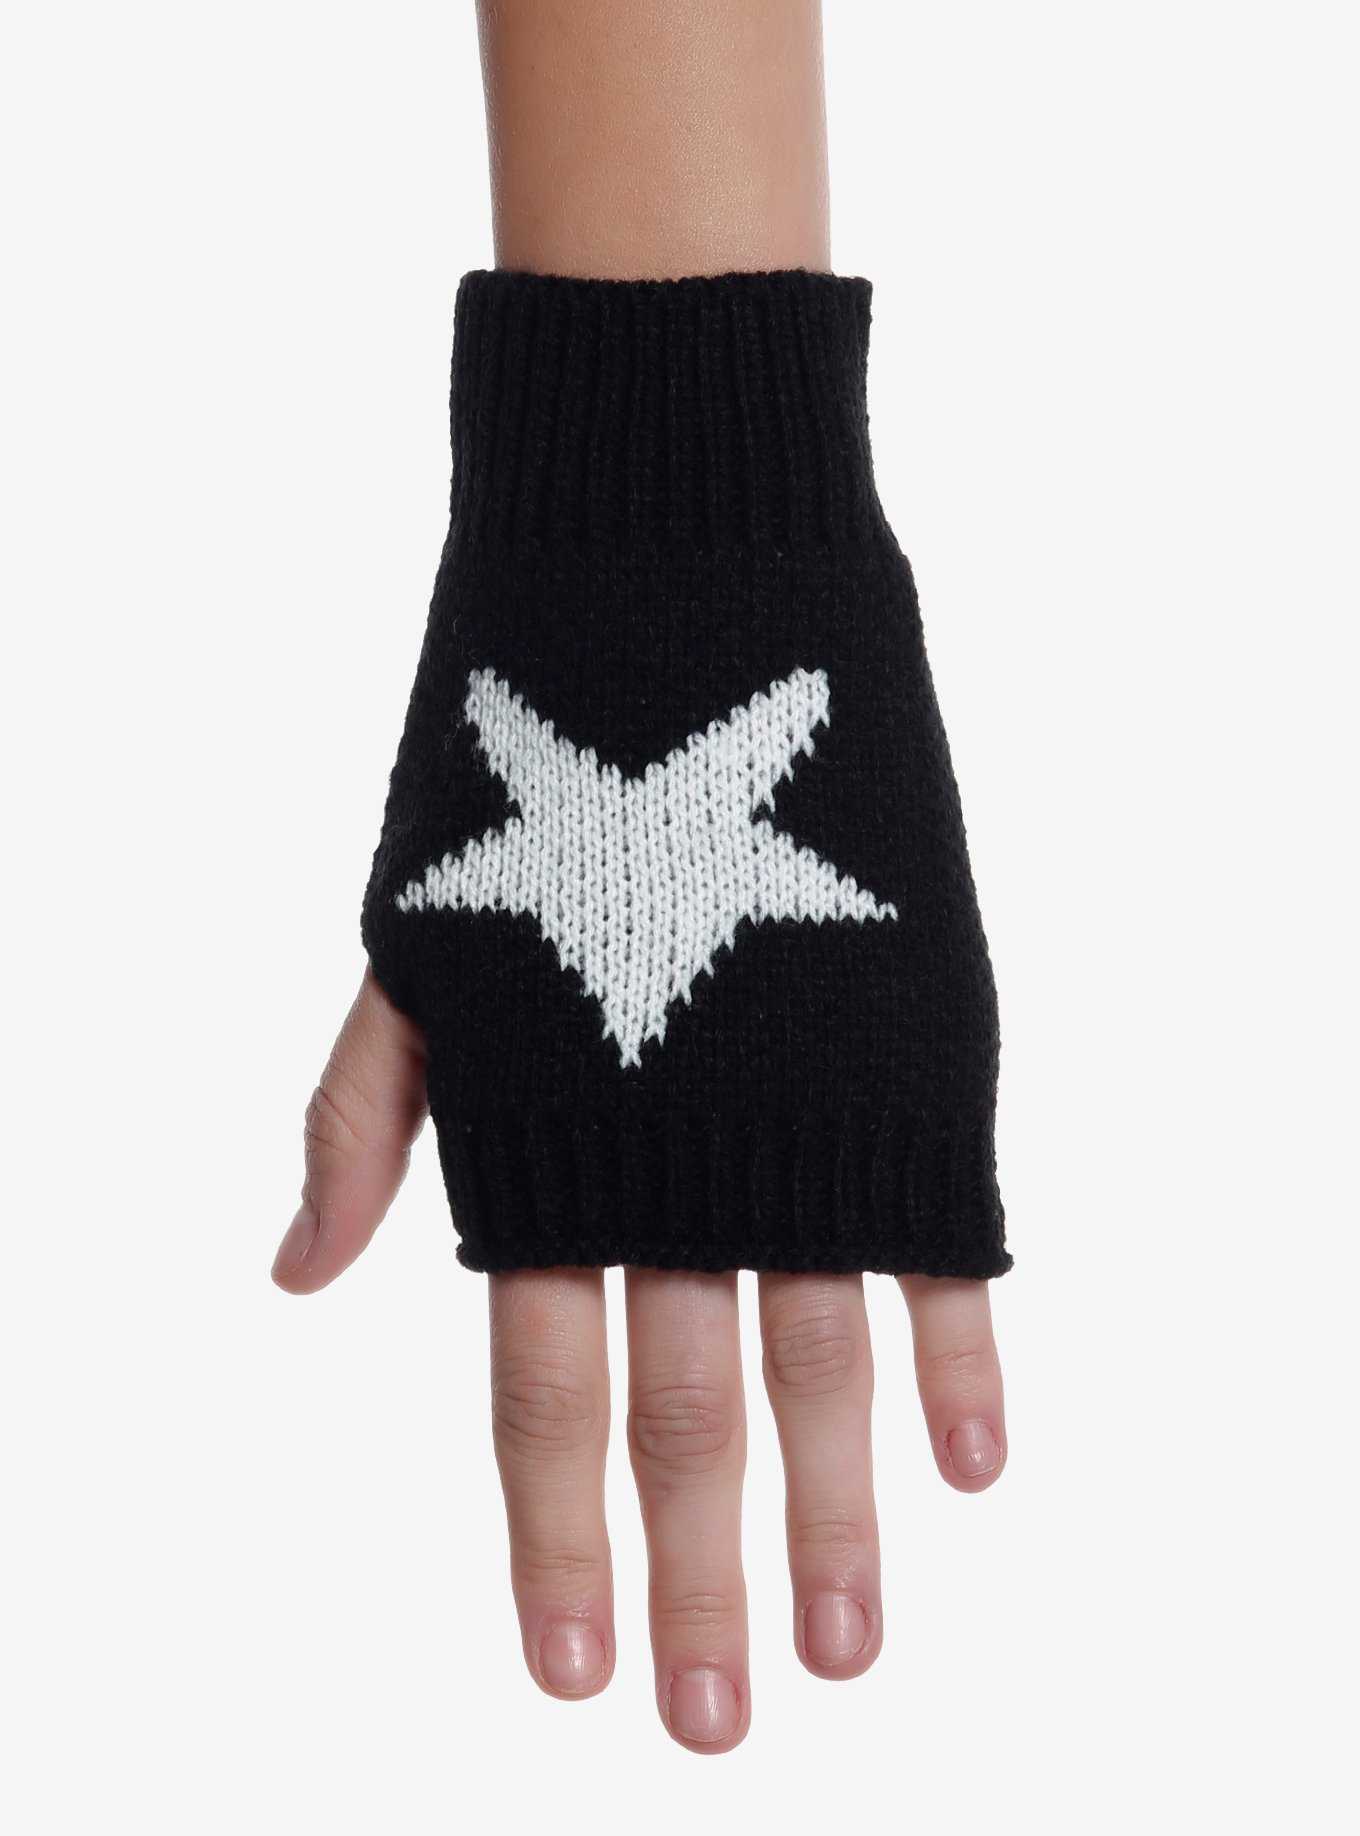 Star Intarsia Fingerless Gloves, , hi-res